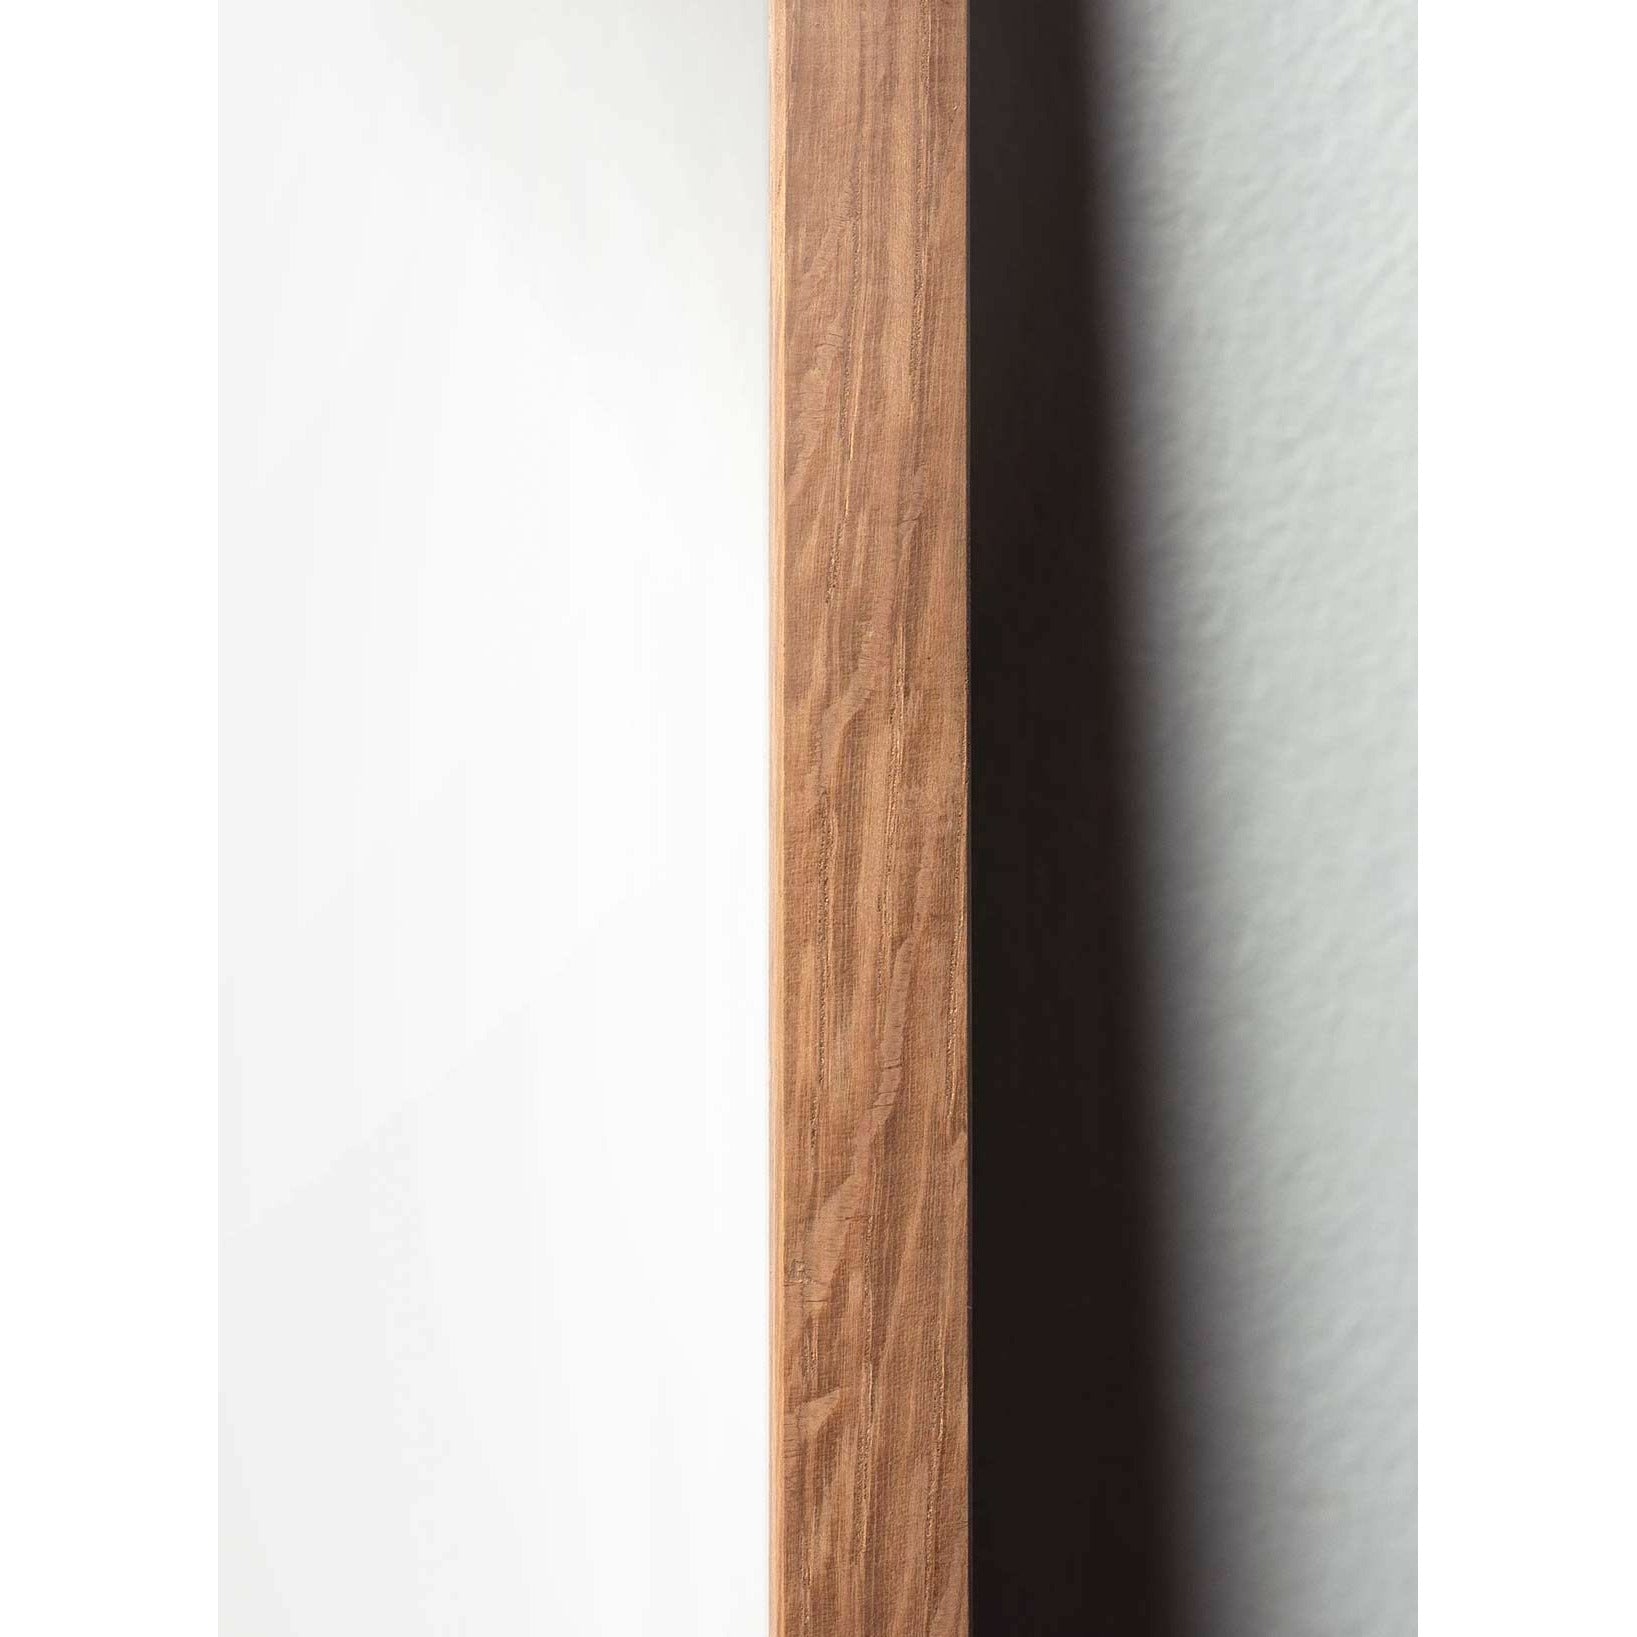 Póster de línea Swan de creación, marco de madera clara A5, fondo blanco